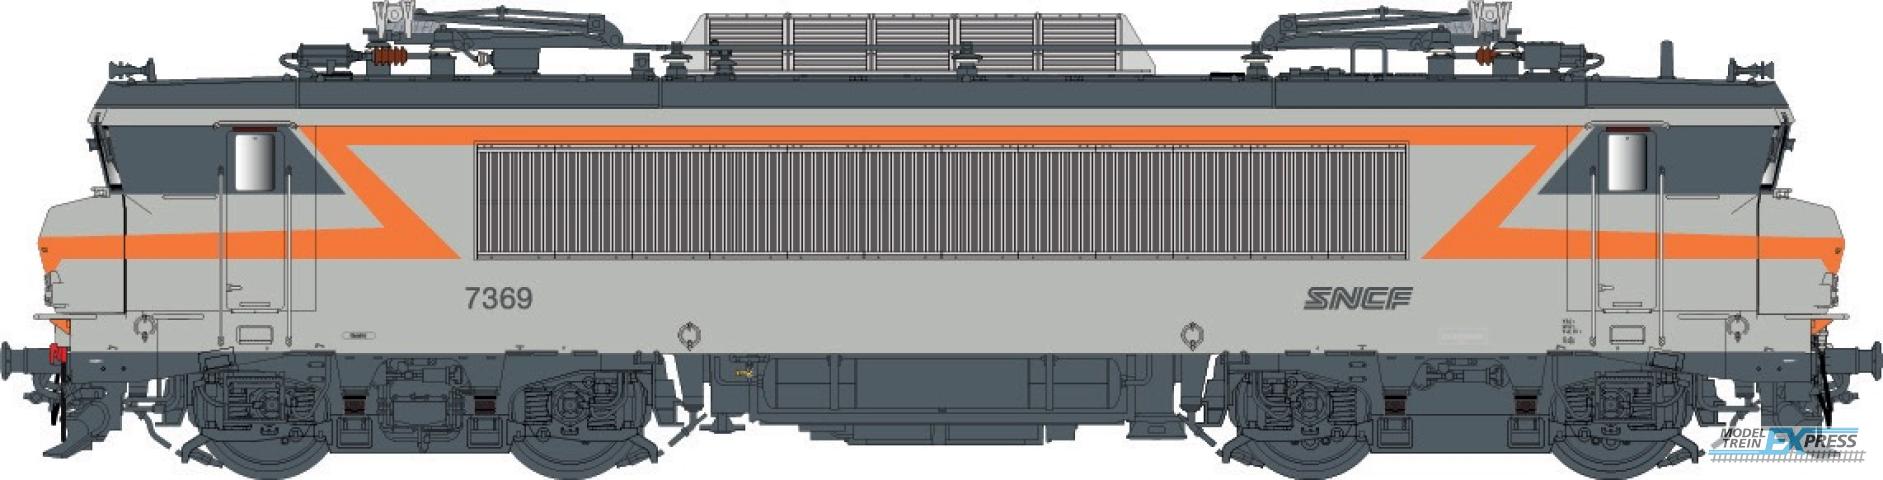 LS Models 11204 BB 7200, grijs/oranje, noedles logo, front nummer, grote cabine  /  Ep. V  /  SNCF  /  HO  /  DC  /  1 P.